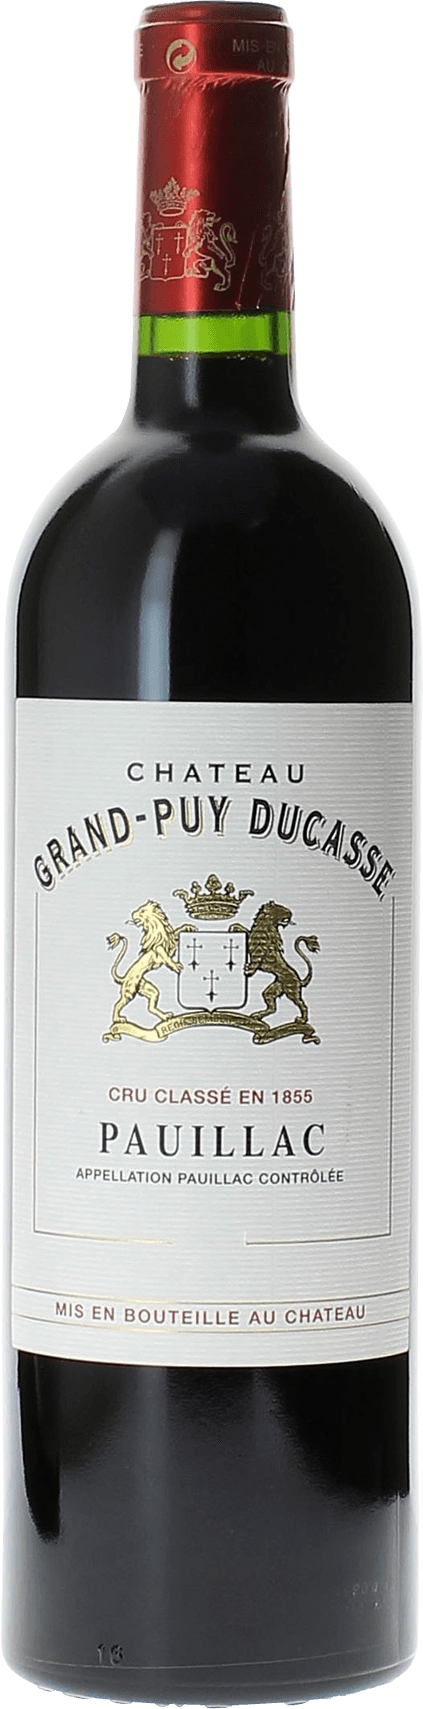 Grand puy ducasse 1996 5 me Grand cru class Pauillac, Bordeaux rouge